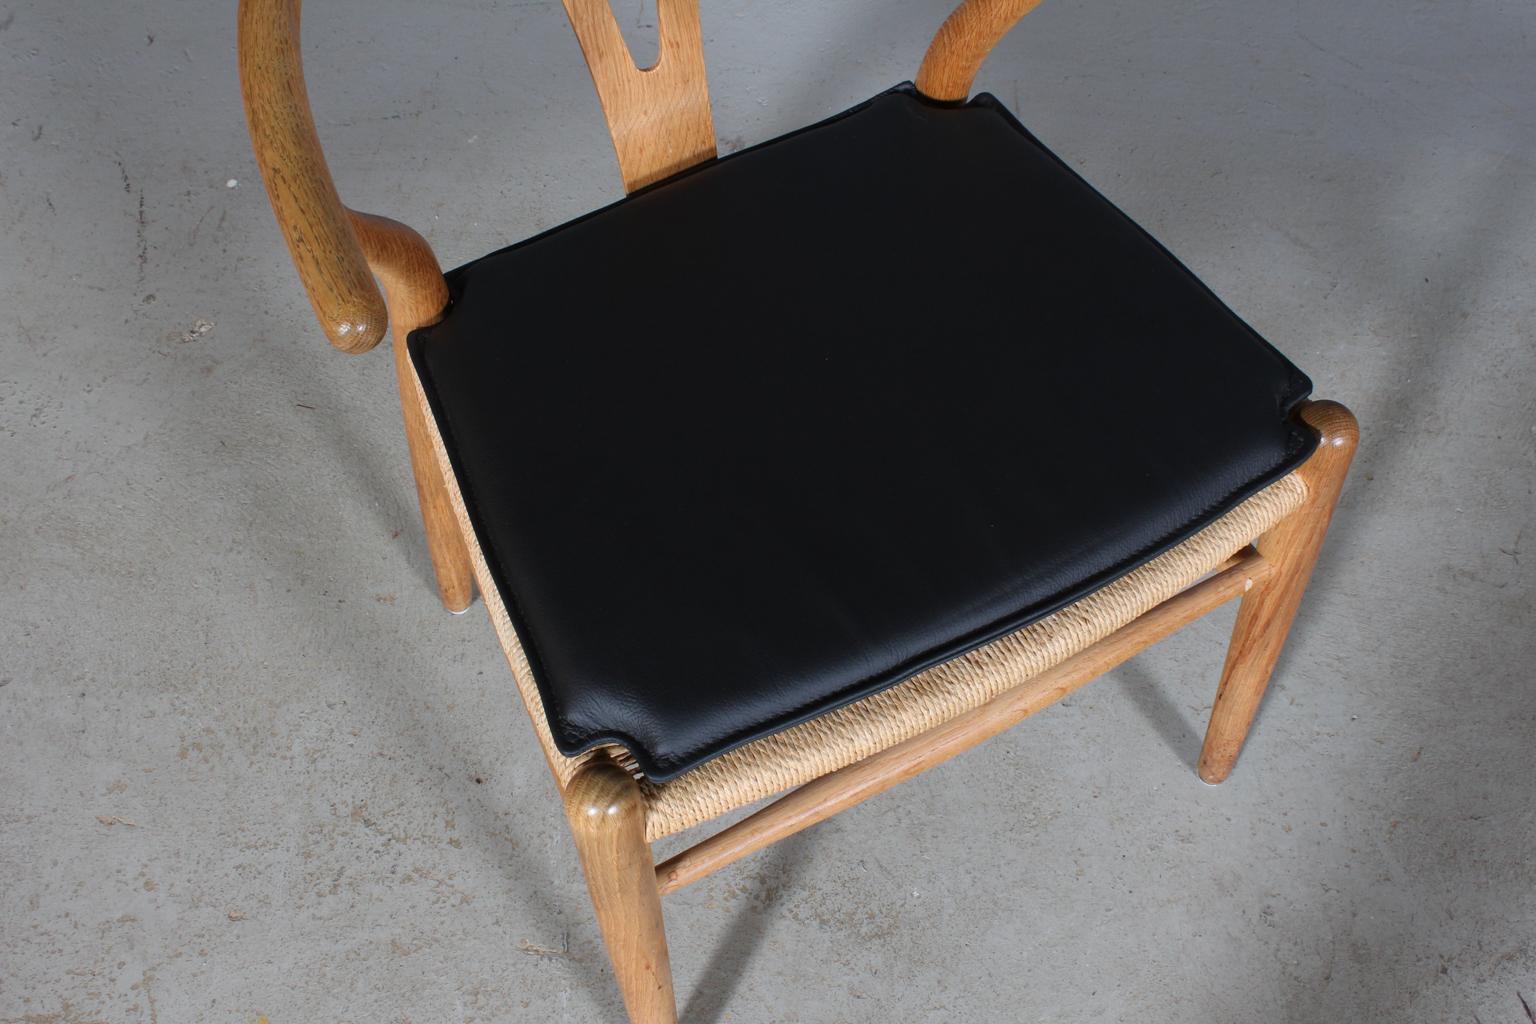 Coussins Hans J. Wegner pour chaise à boudin modèle CH24.

Fabriqué en cuir noir et en mousse de bonne qualité.

Seulement le coussin, pas la chaise.